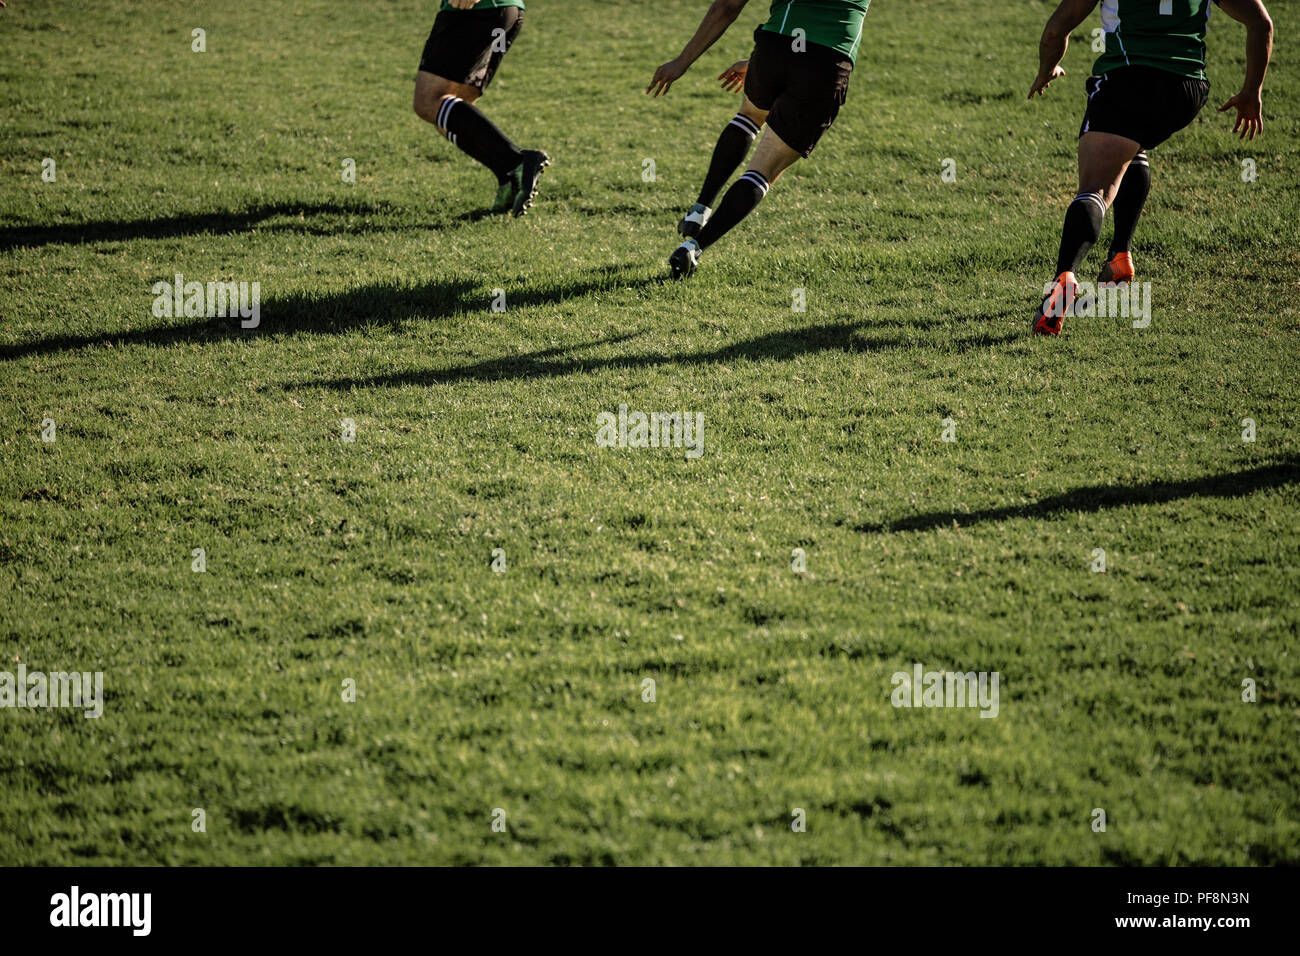 giocatori di rugby che corrono sul campo durante una partita. Piedi di giocatori professionisti di rugby che giocano una partita in campo. Foto Stock